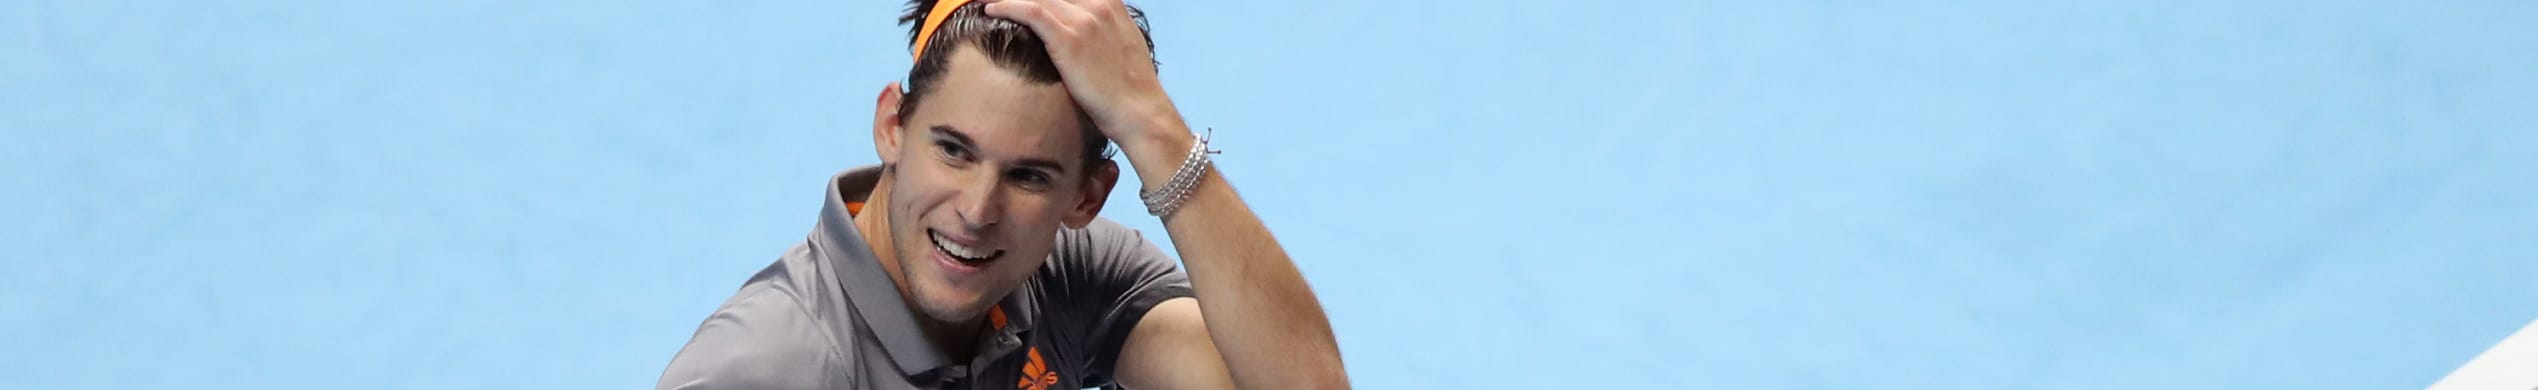 ATP Cup 2020: Djokovic e Nadal vita facile, Cilic e Coric intriganti, ma occhio anche a Thiem